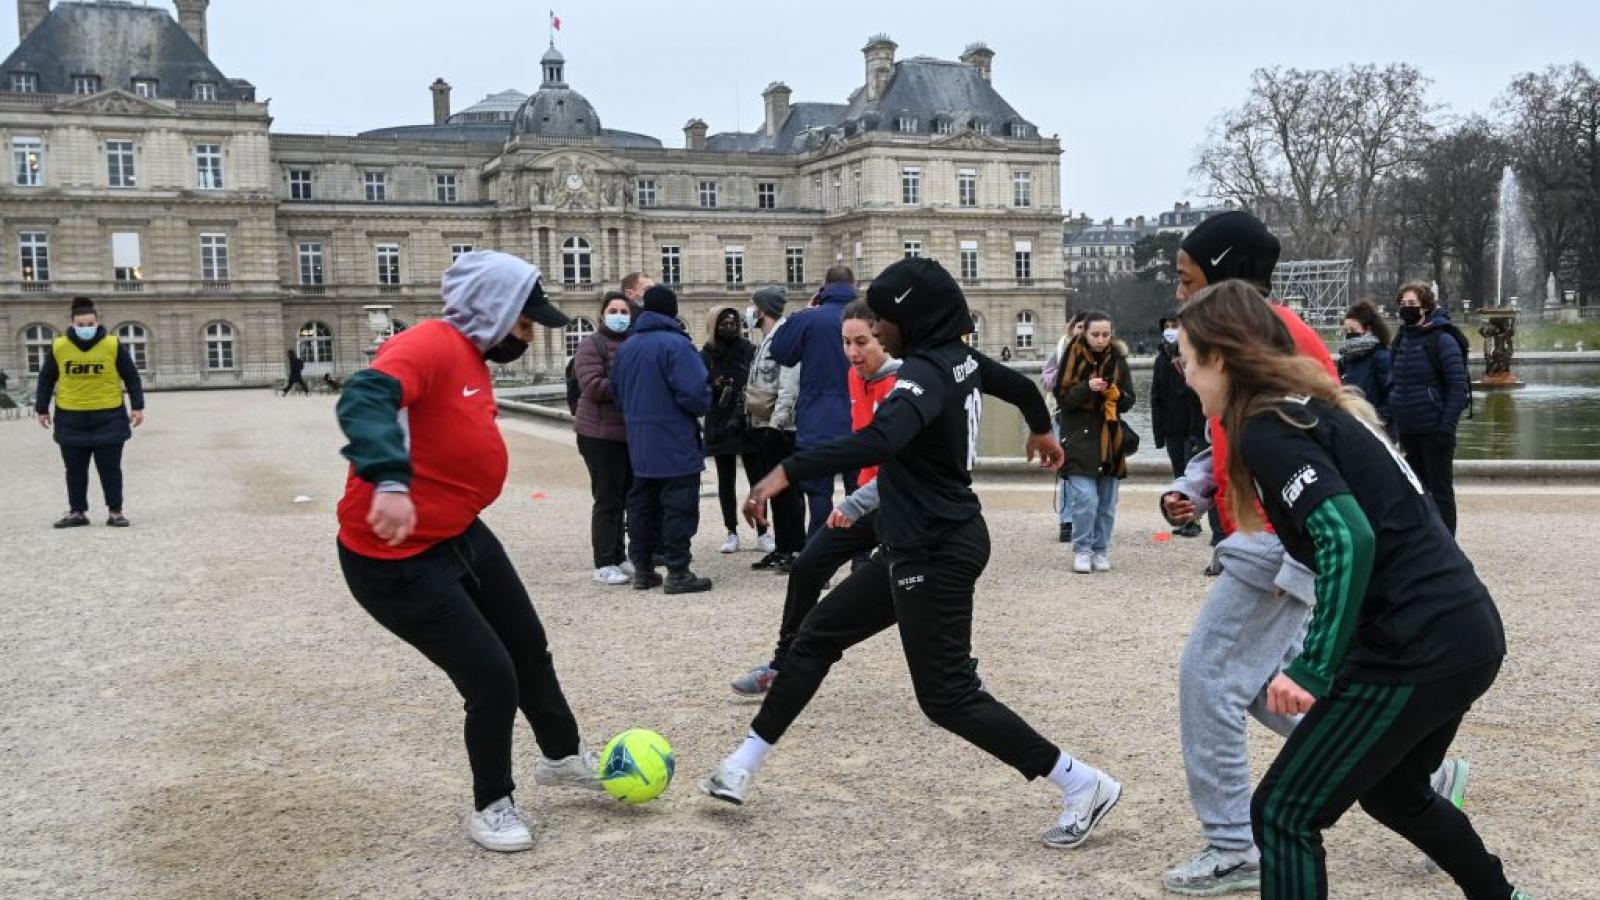 الاتحاد الرياضي للتضامن الإسلامي يندد بقرار فرنسا منع اللاعبات من ارتداء الحجاب